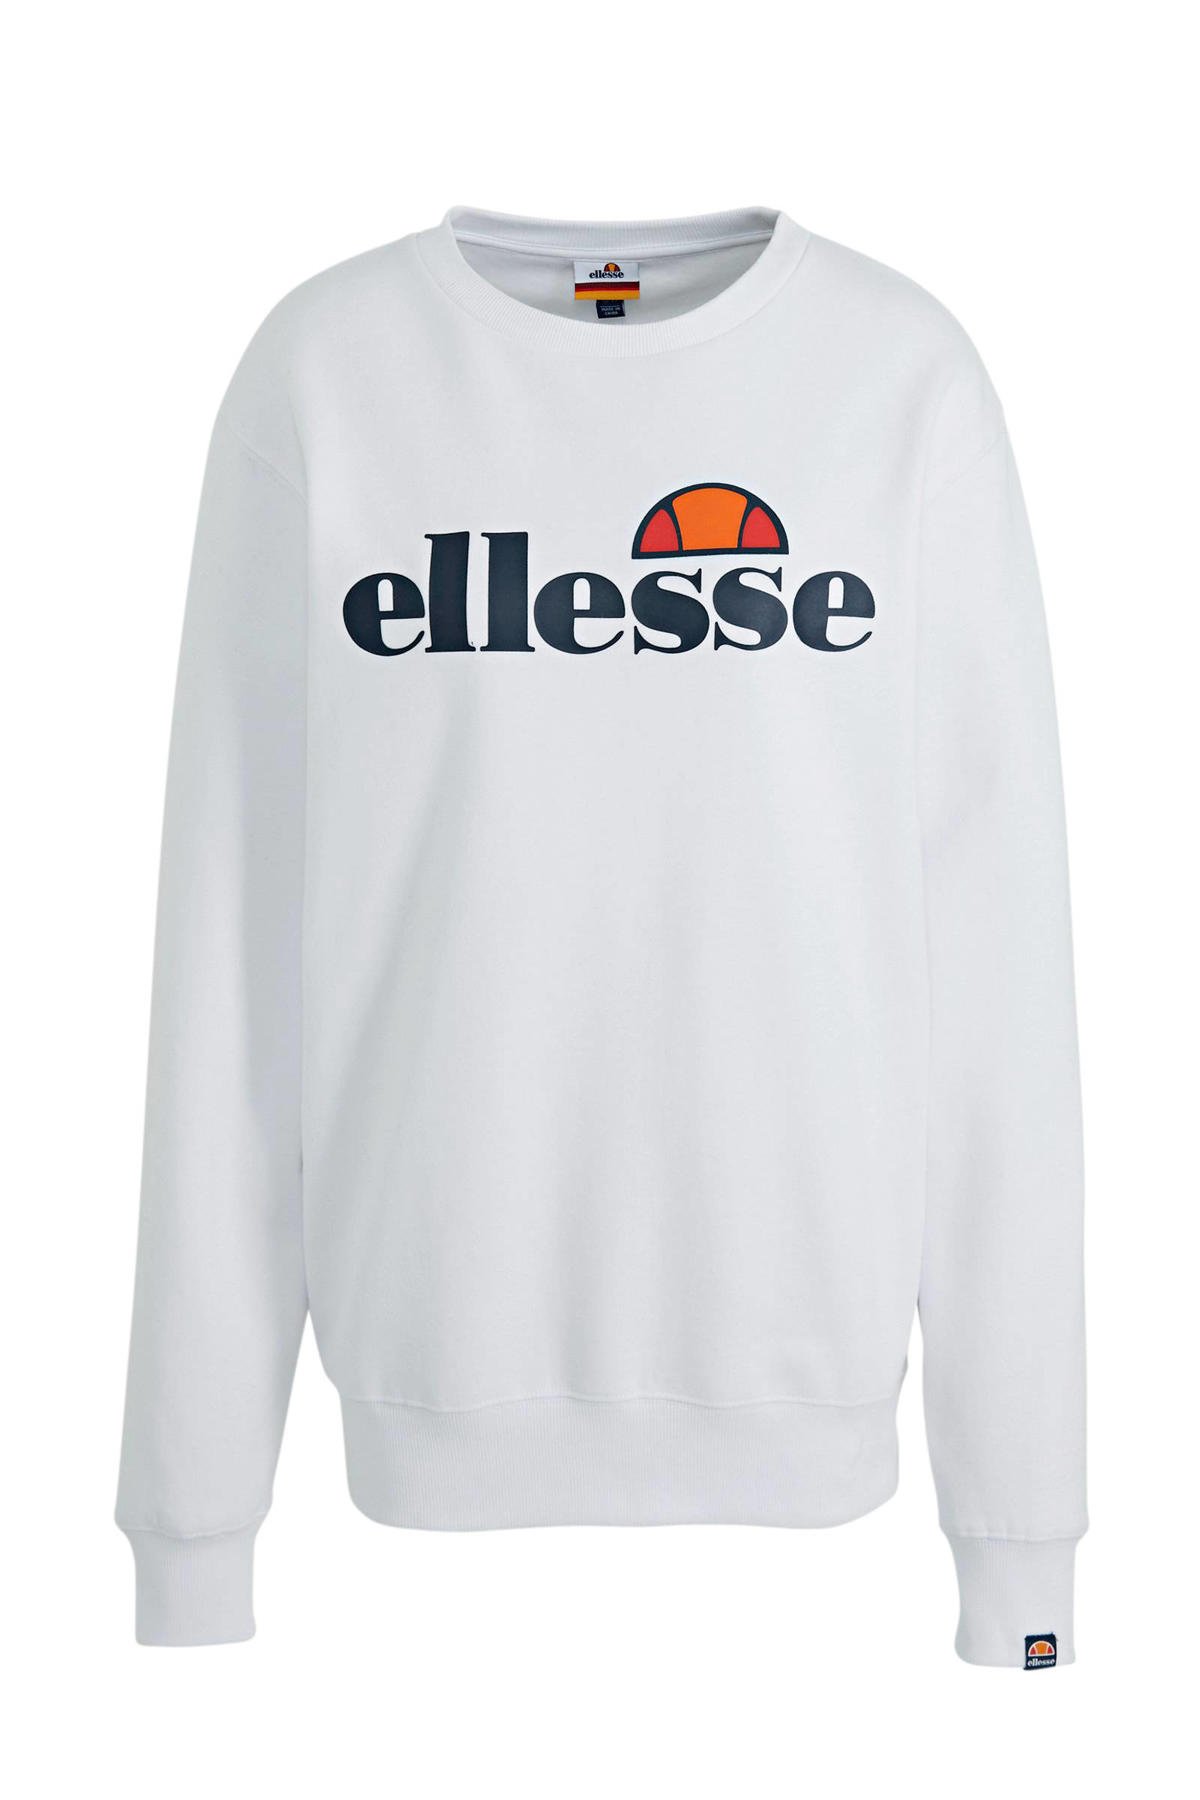 Wacht even Voornaamwoord hurken Ellesse sweater wit kopen? | Morgen in huis | wehkamp